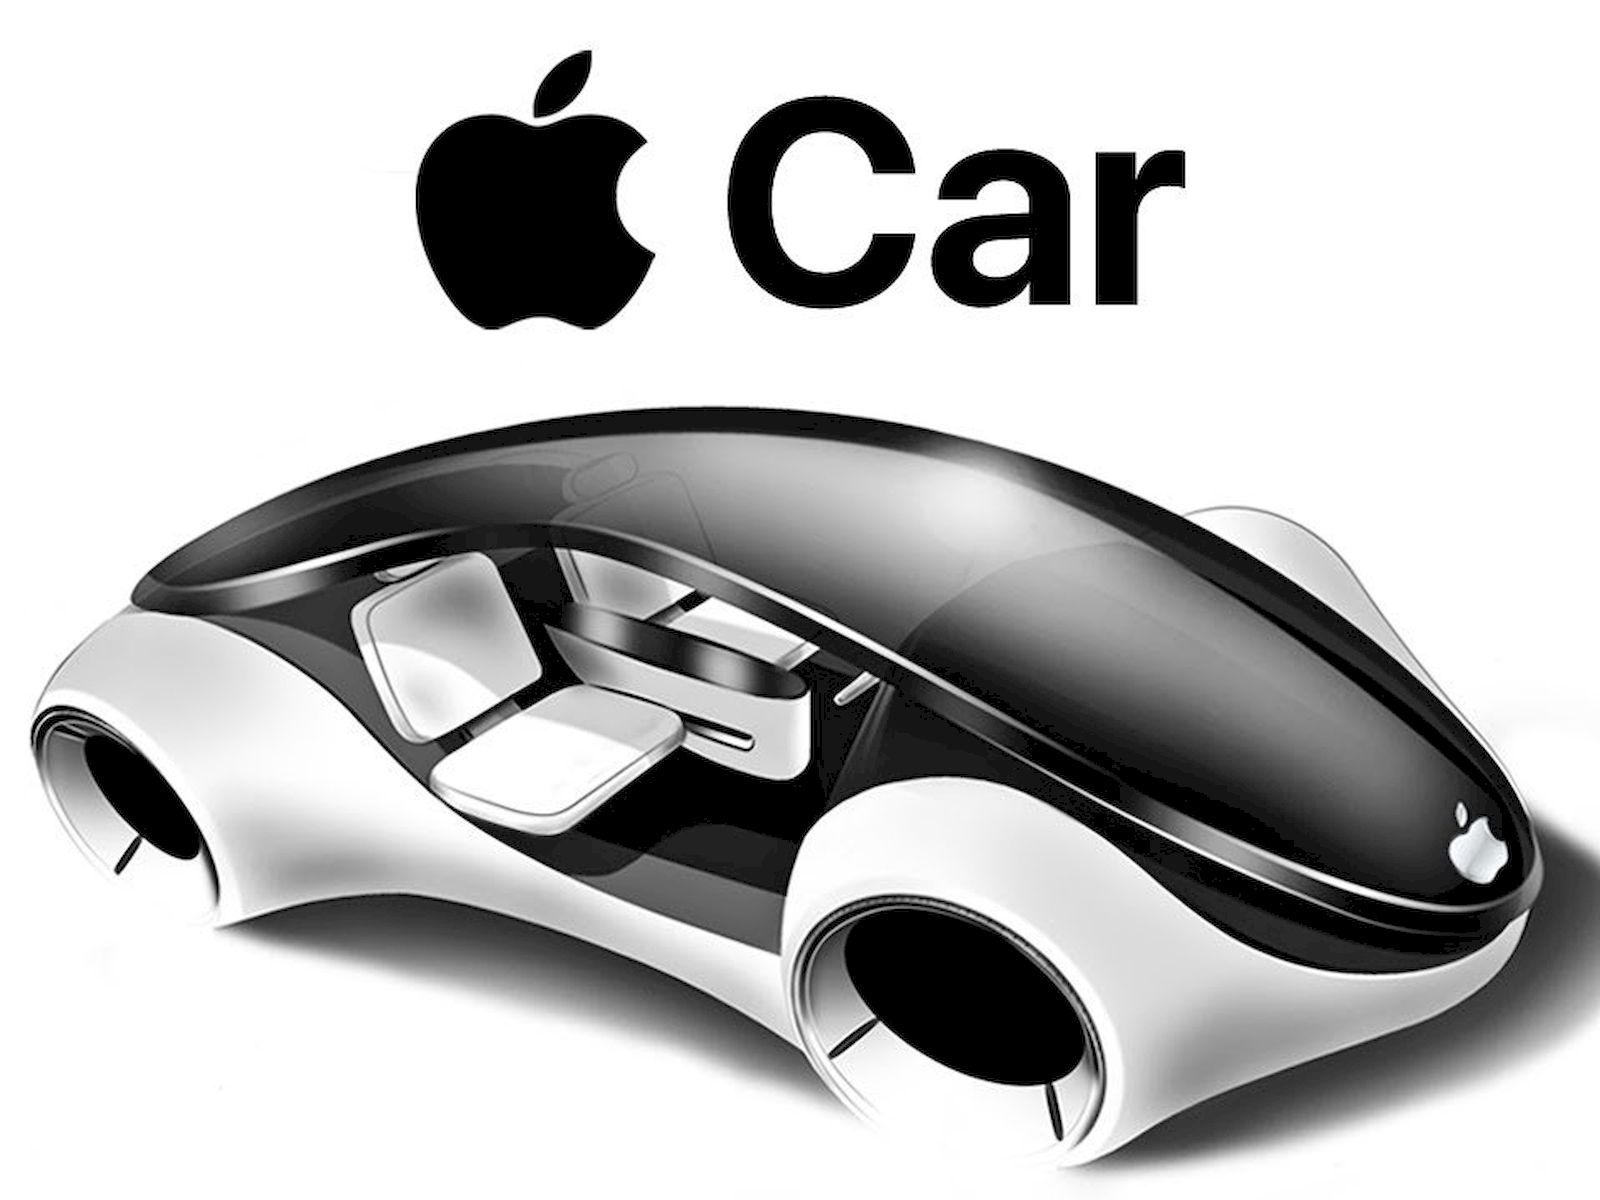 Apple Car ne zaman çıkacak? Kartal 24